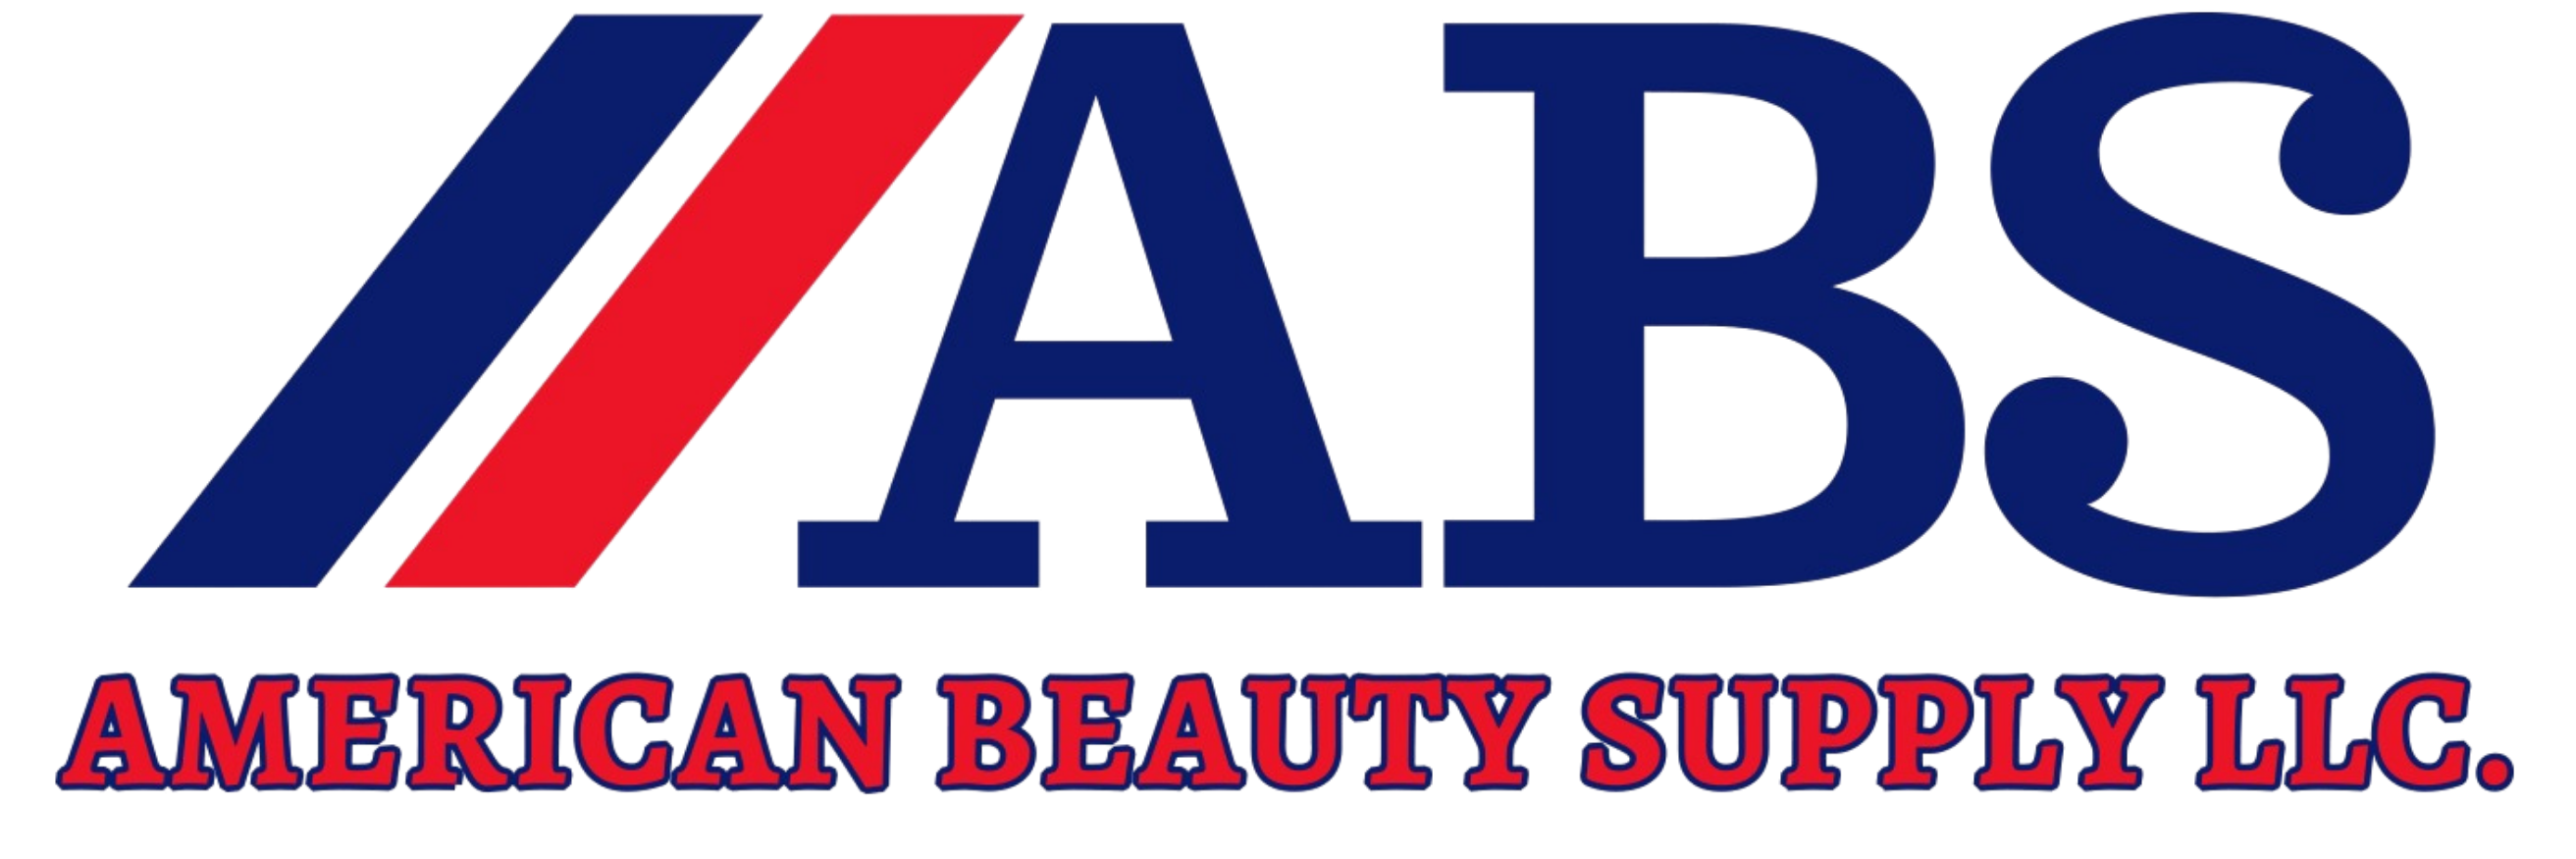 American Beauty Supply - ¡Te damos el 30% en toda la marca BIOTOP